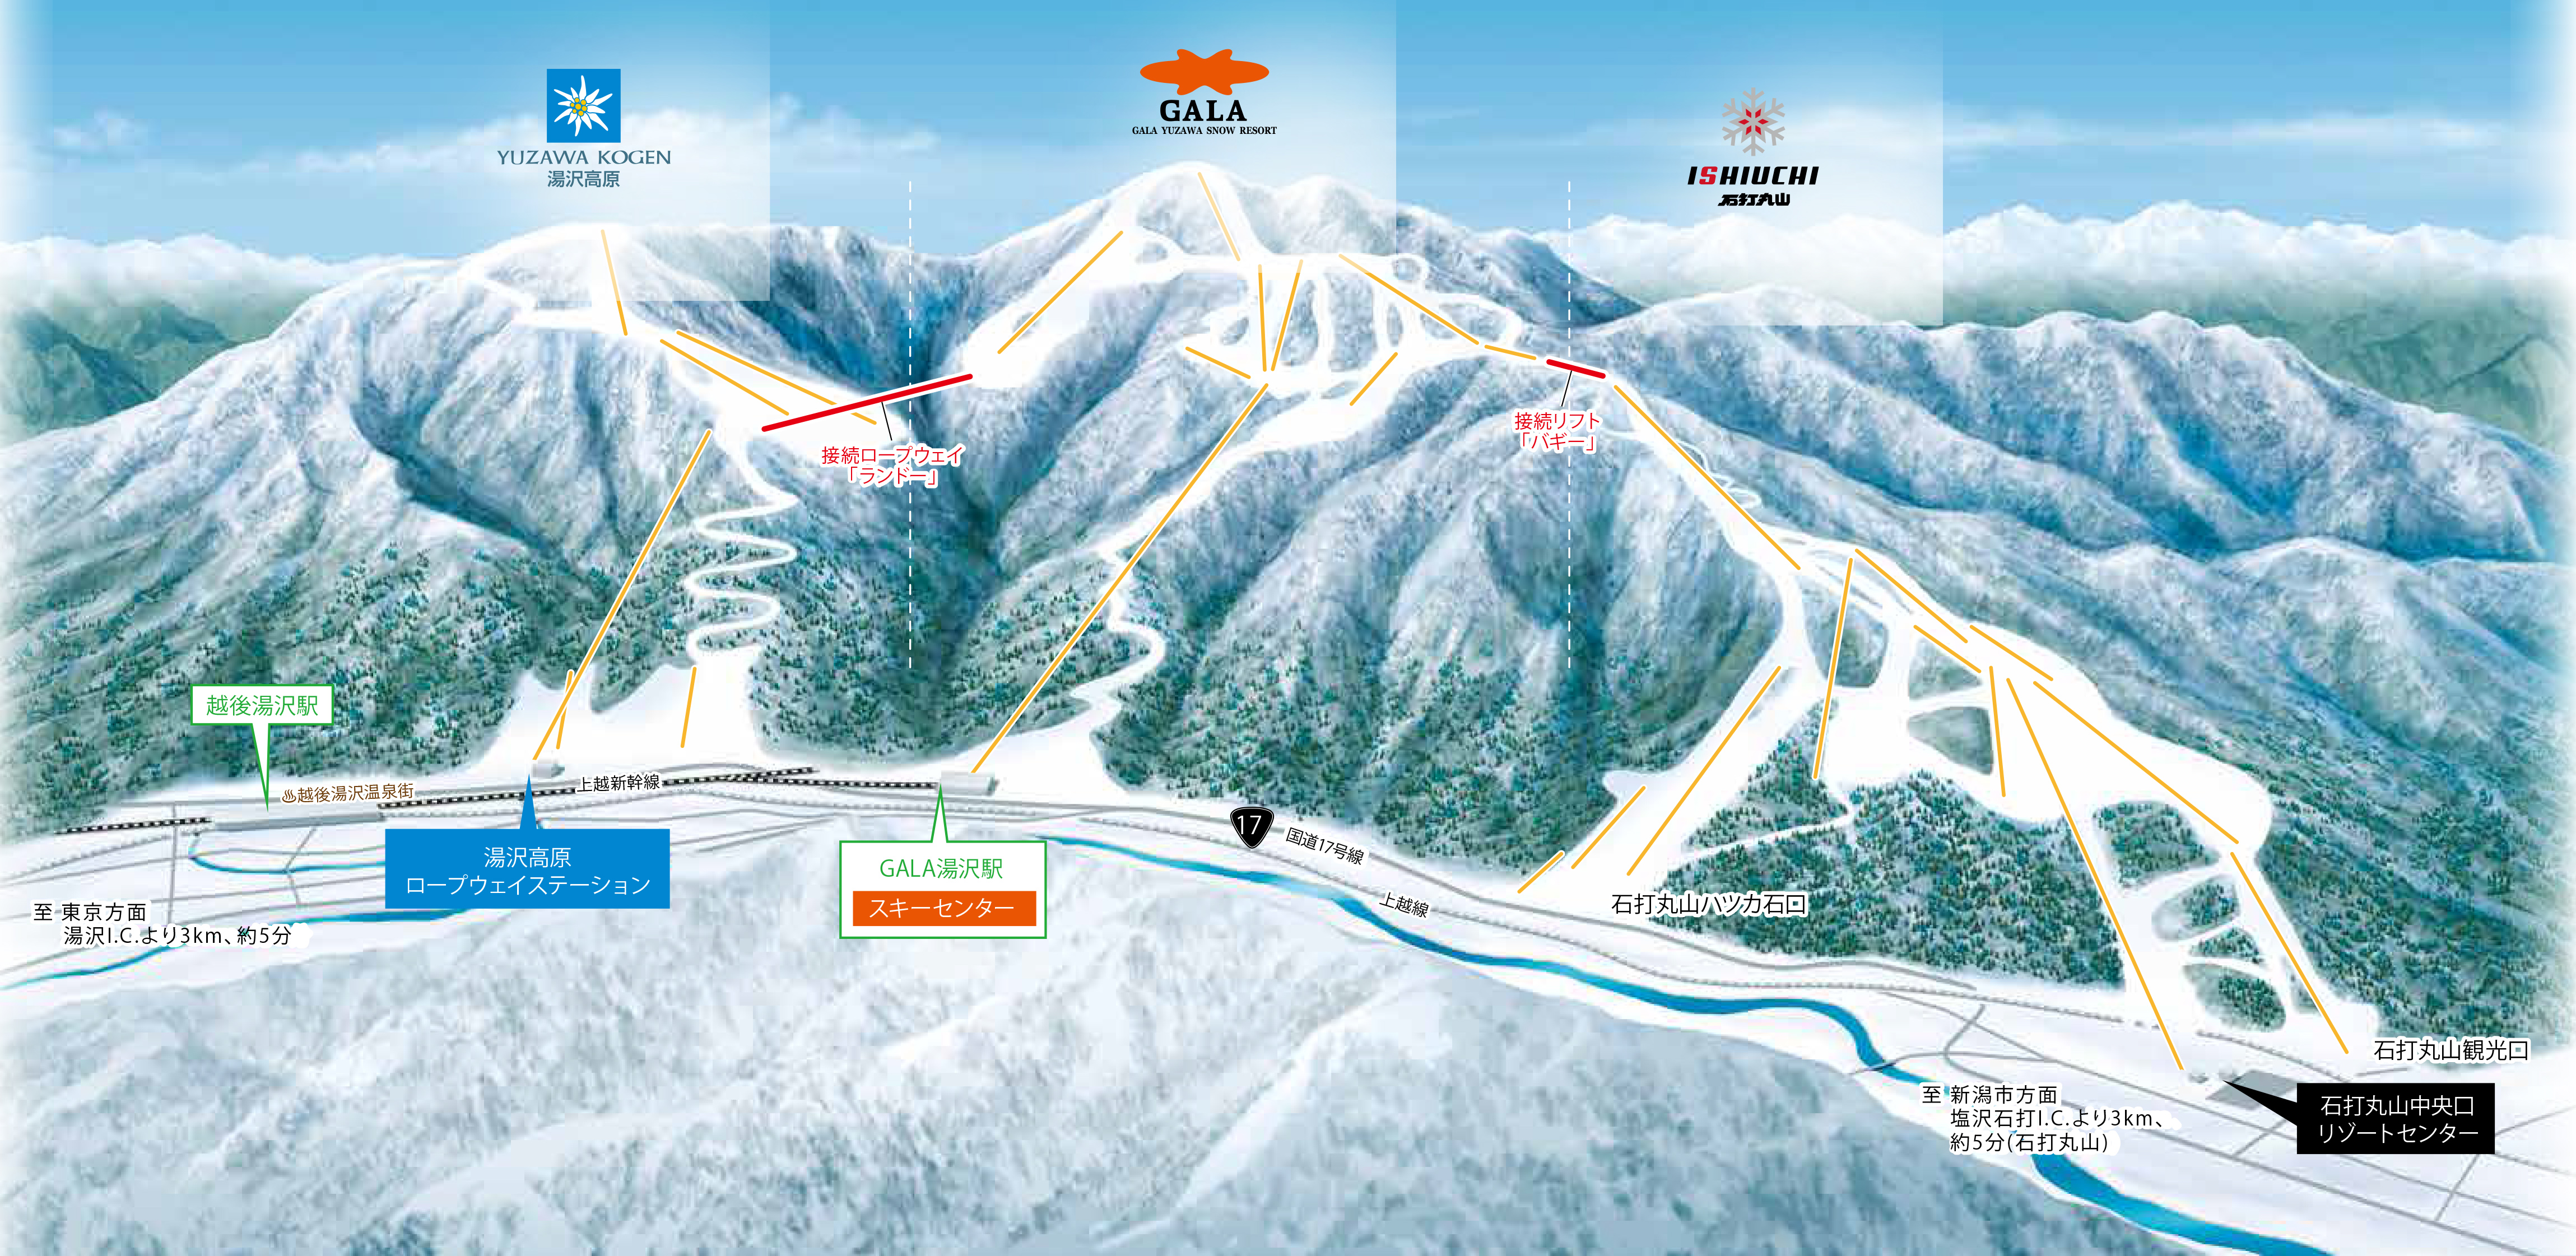 BIG MOUNTAIN 湯沢スノーリンク | 石打丸山スキー場【公式サイト】